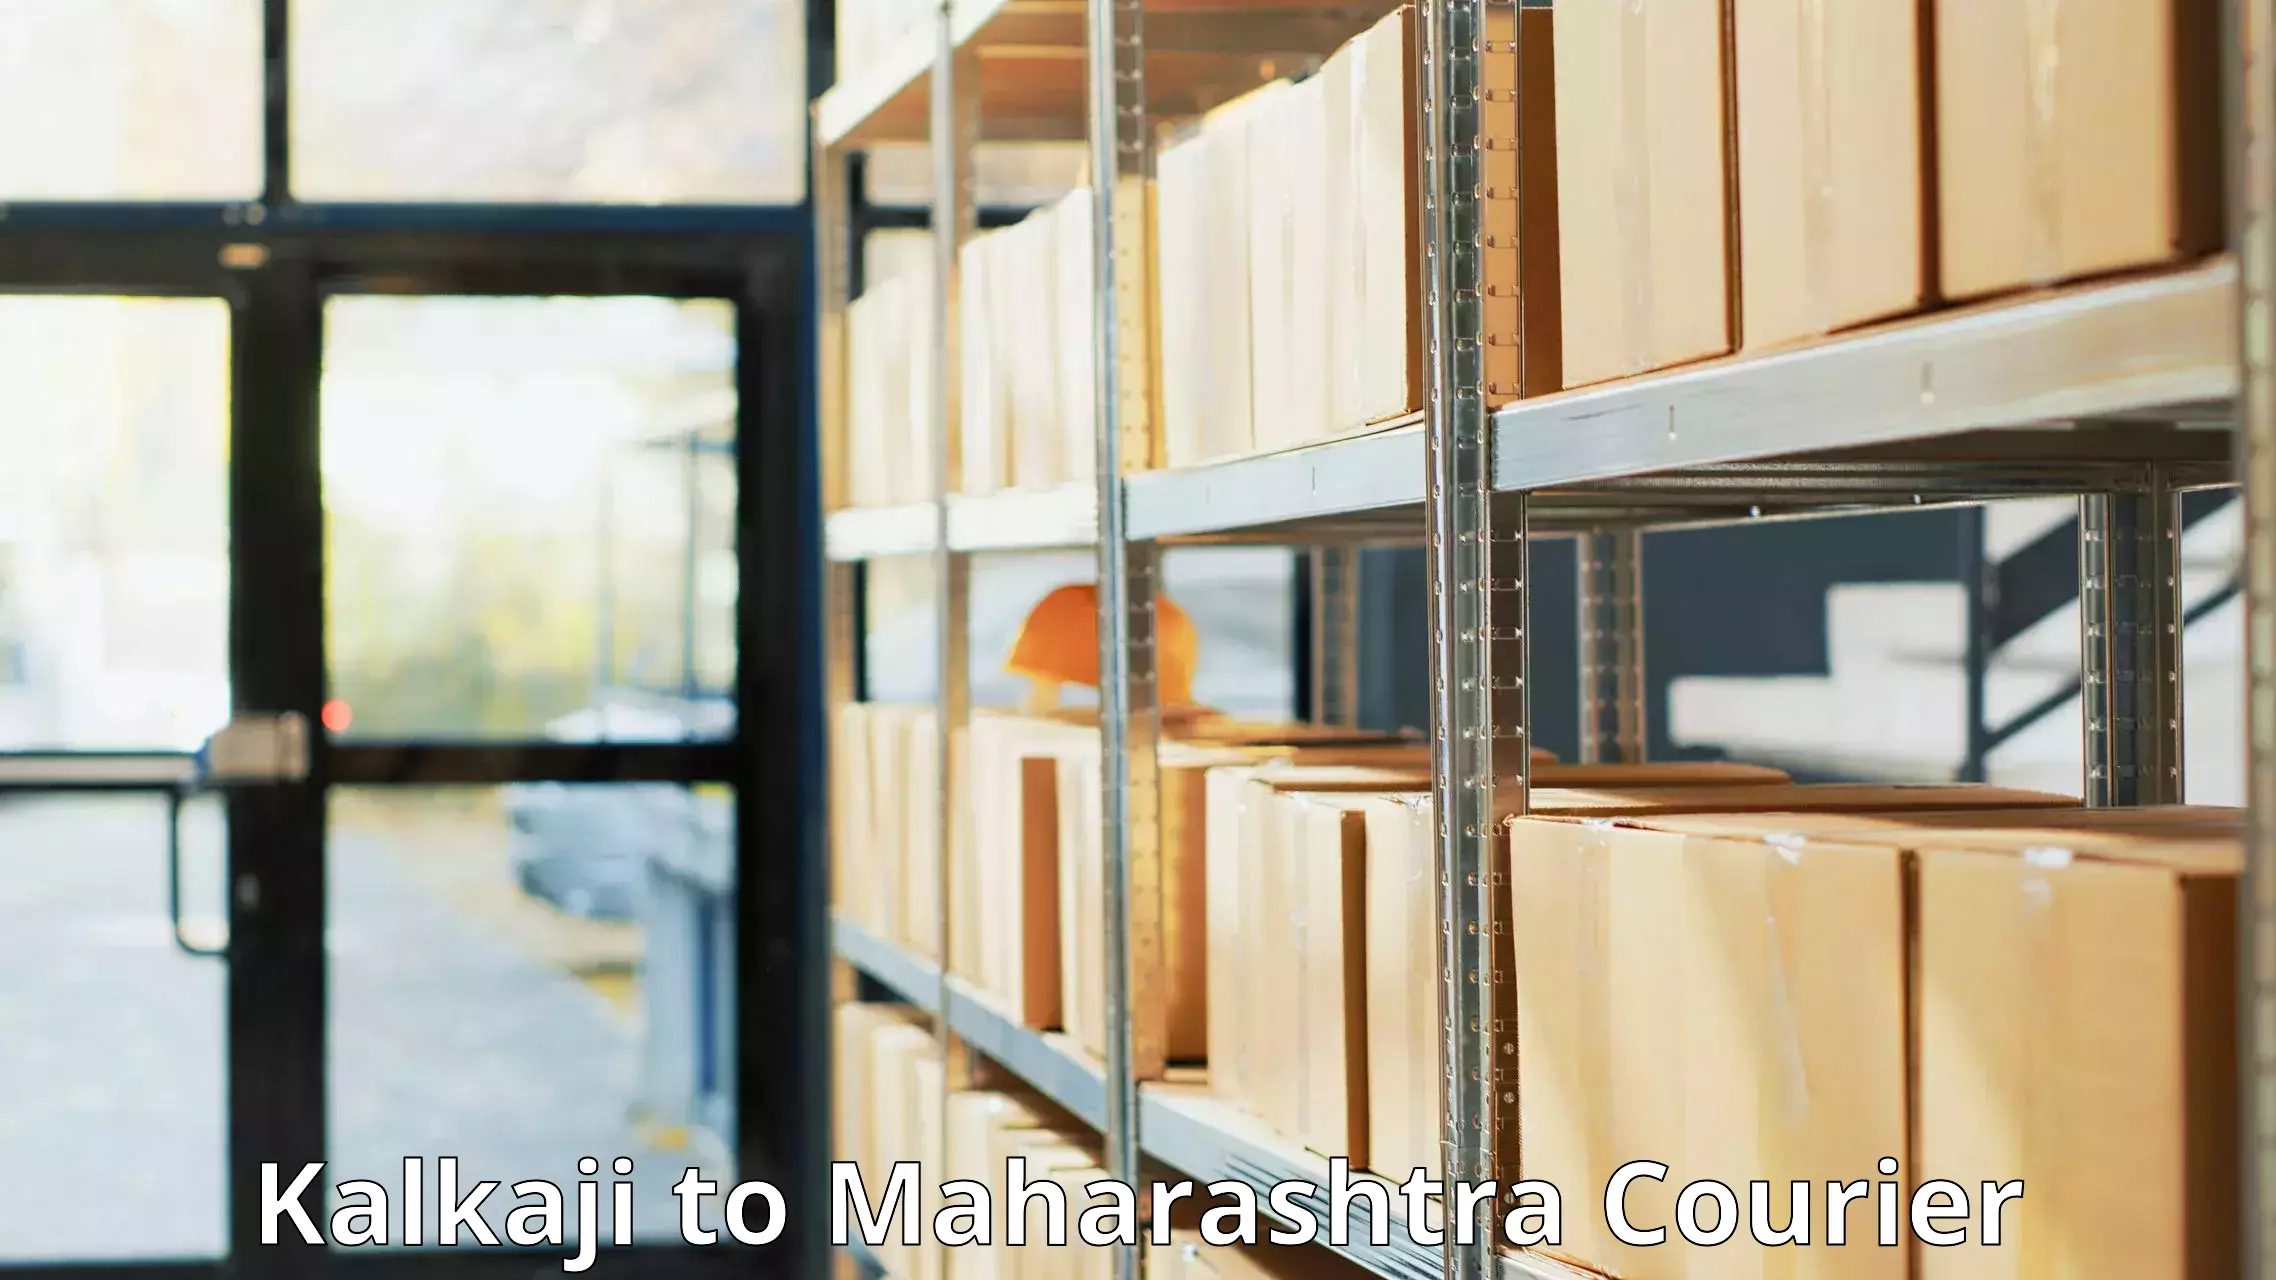 Express mail solutions Kalkaji to Mantha